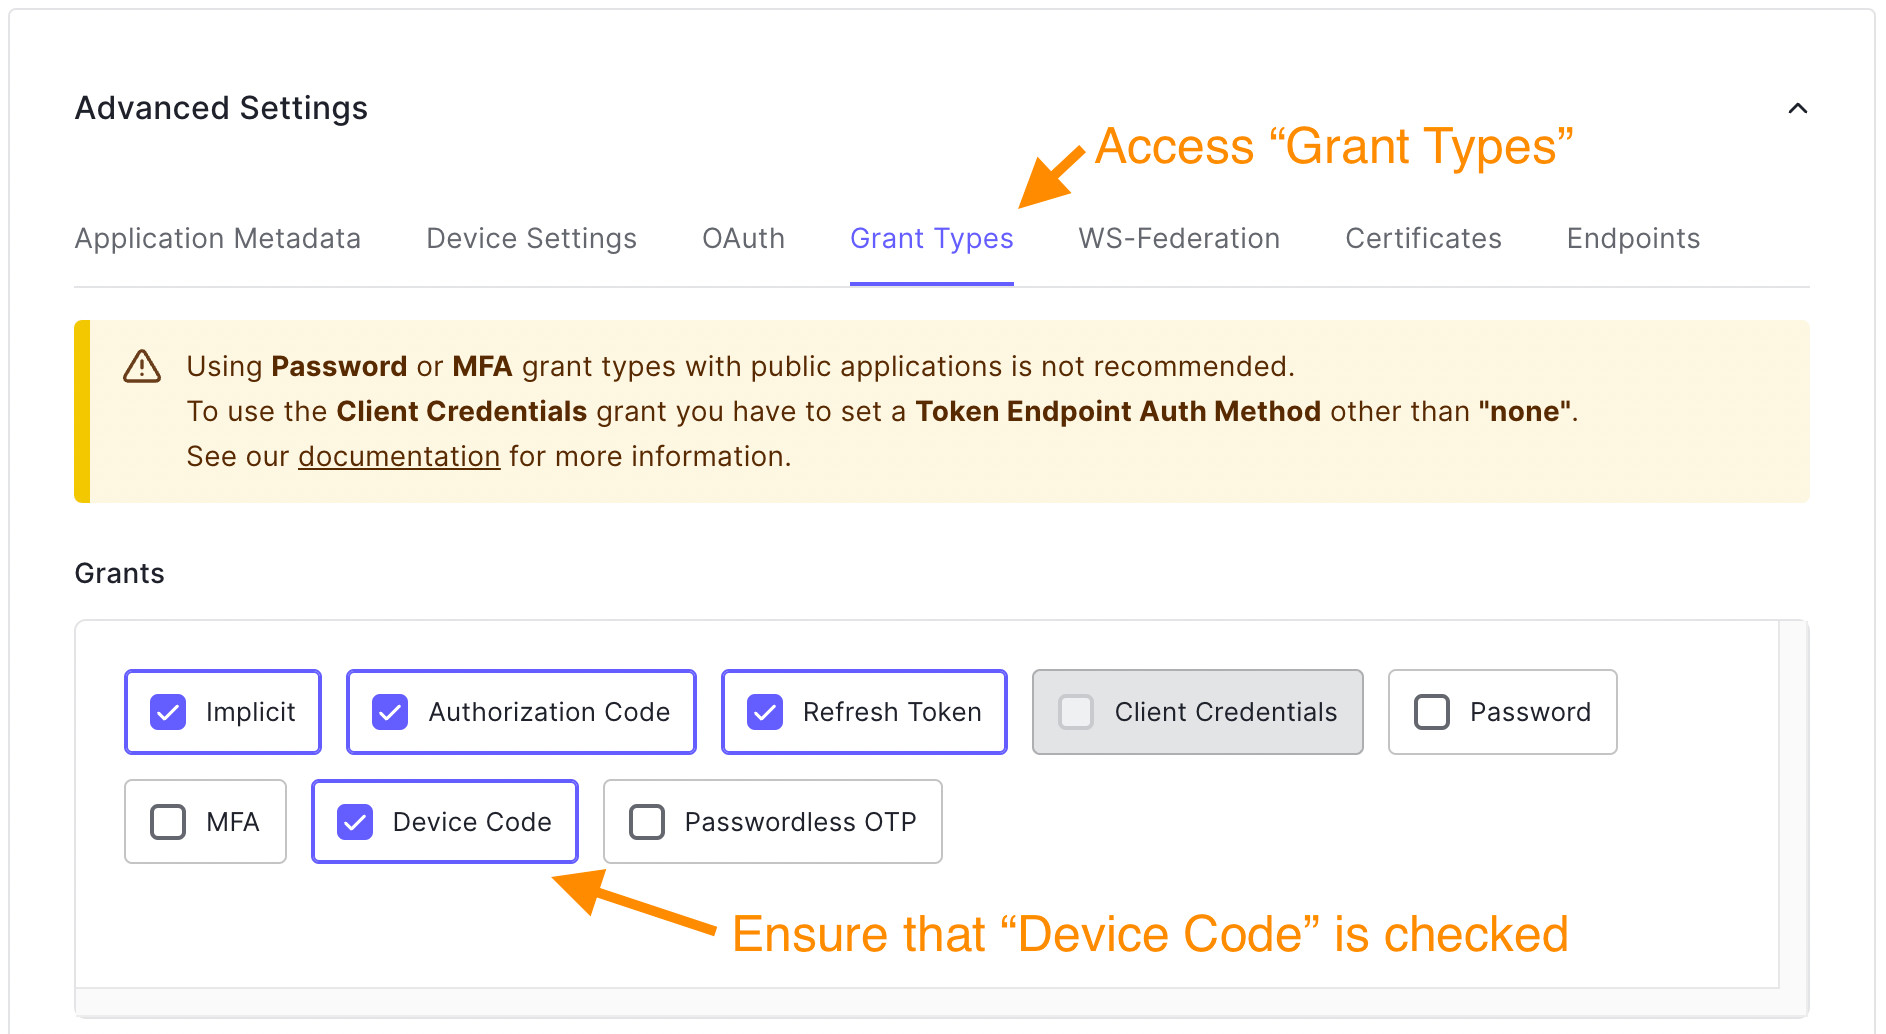 Adding "Device Code" grant